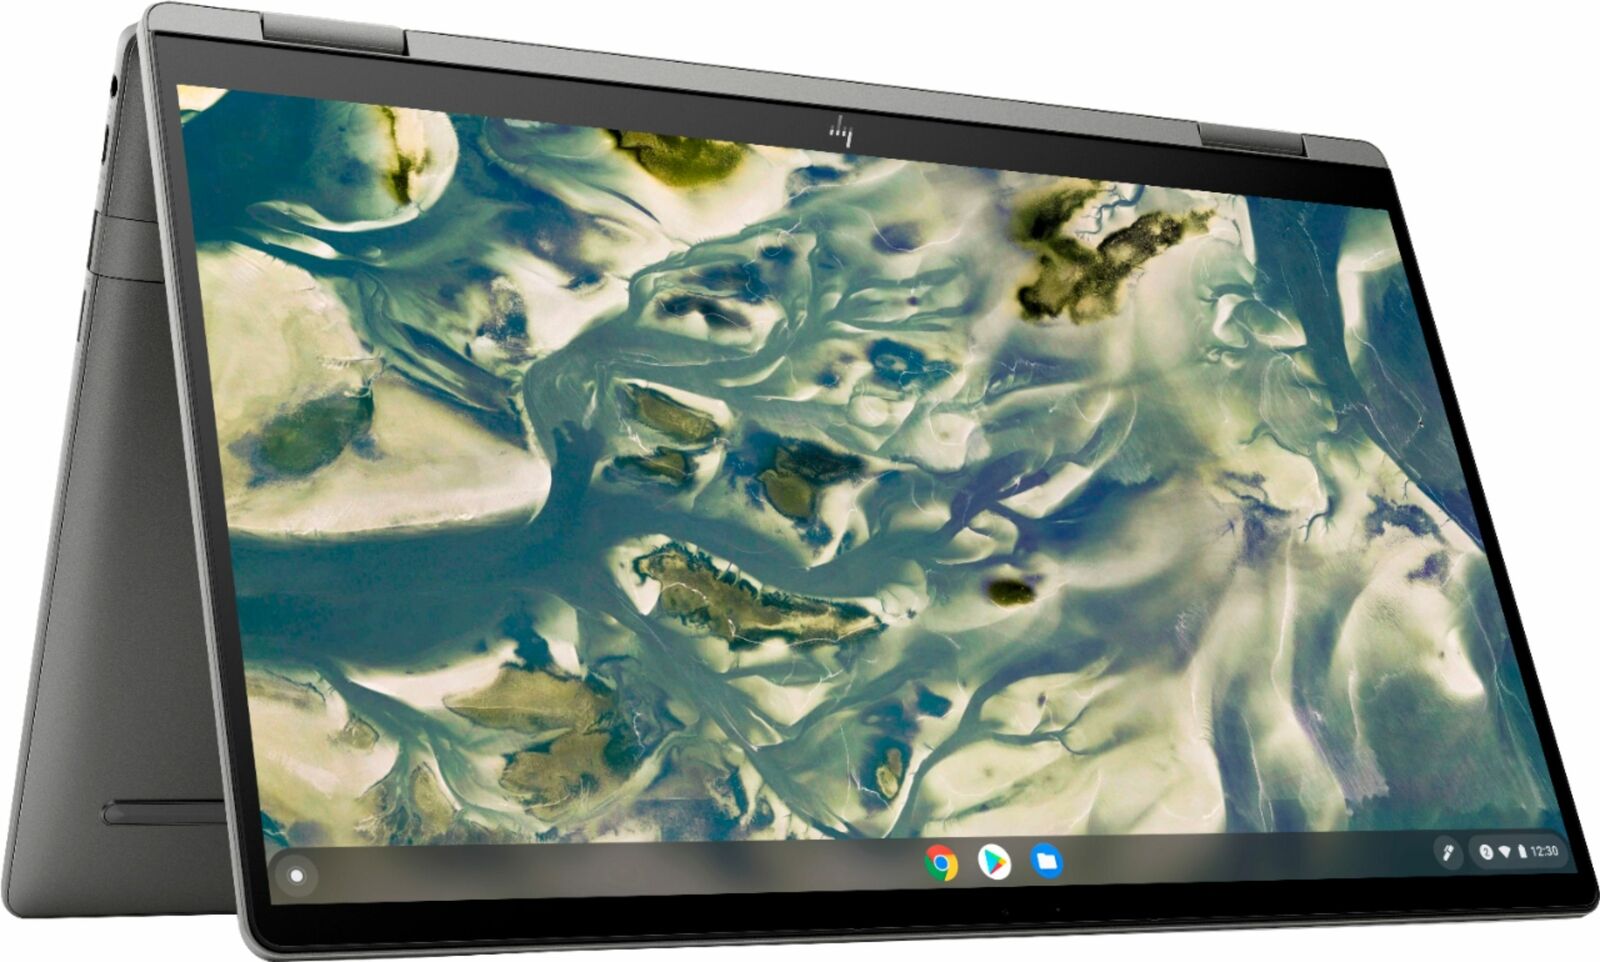 HP Chromebook x360 14c: 14" FHD IPS Touch, i3-1115G4, 8GB DDR4, 128GB SSD $399.99